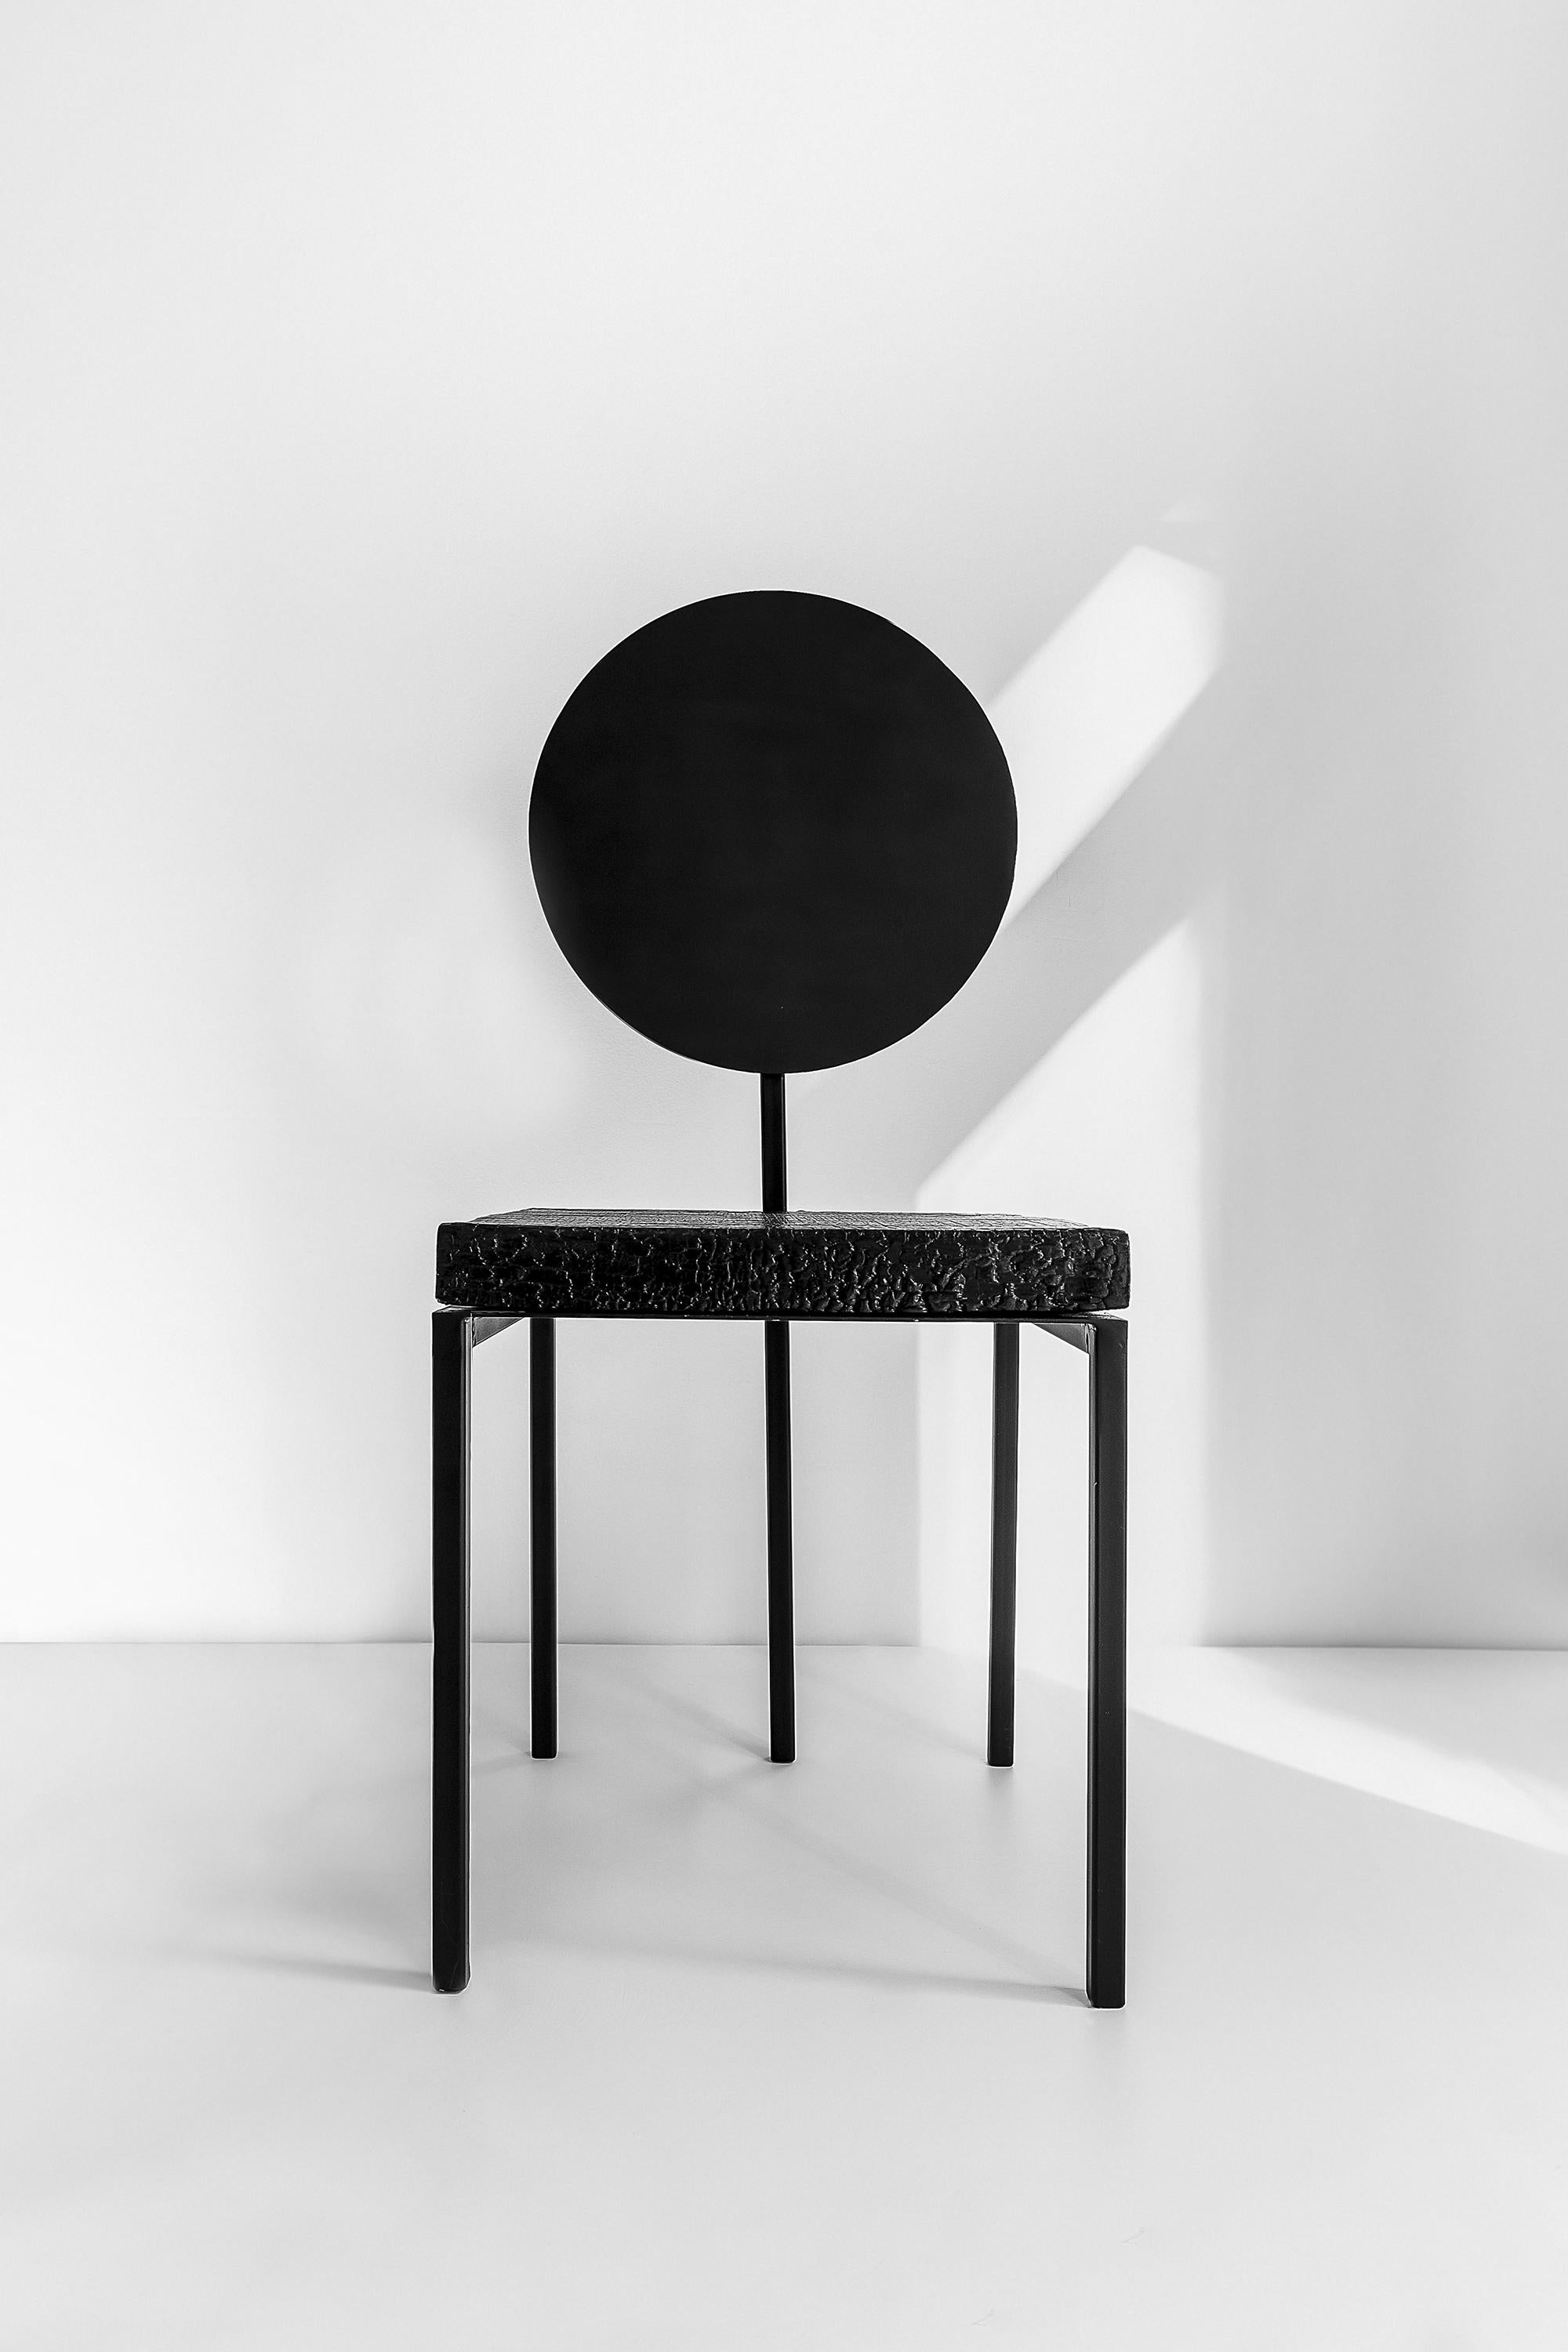 Die eleganten und exklusiven Stühle von Pendolo vereinen elementare und zugleich kühne Geometrien, die einem einzigartigen Sitz mit fünf Beinen Leben einhauchen. Das Holzmaterial wird durch ein oberflächliches Brennverfahren aufgearbeitet. Die